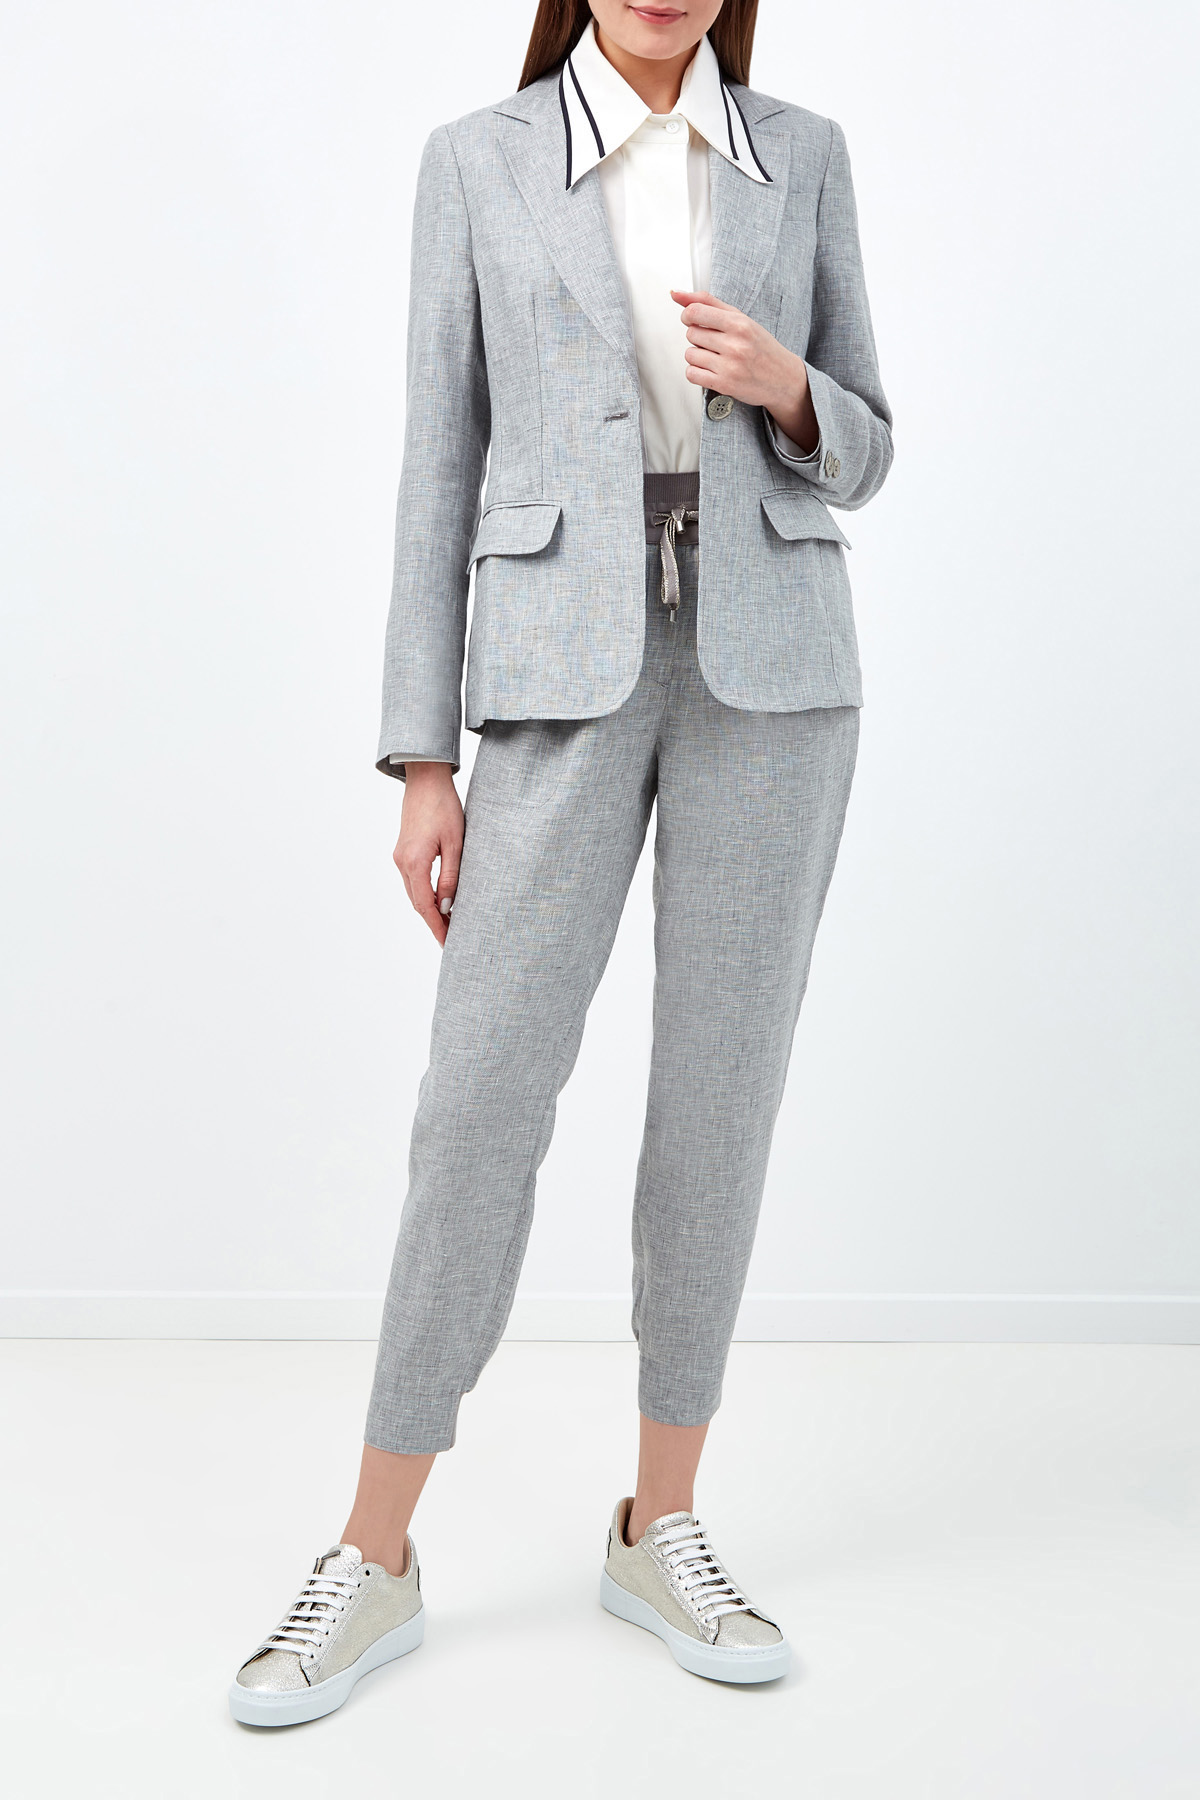 Льняные брюки с отделкой из фирменного джерси LORENA ANTONIAZZI, цвет серый, размер 38 - фото 2